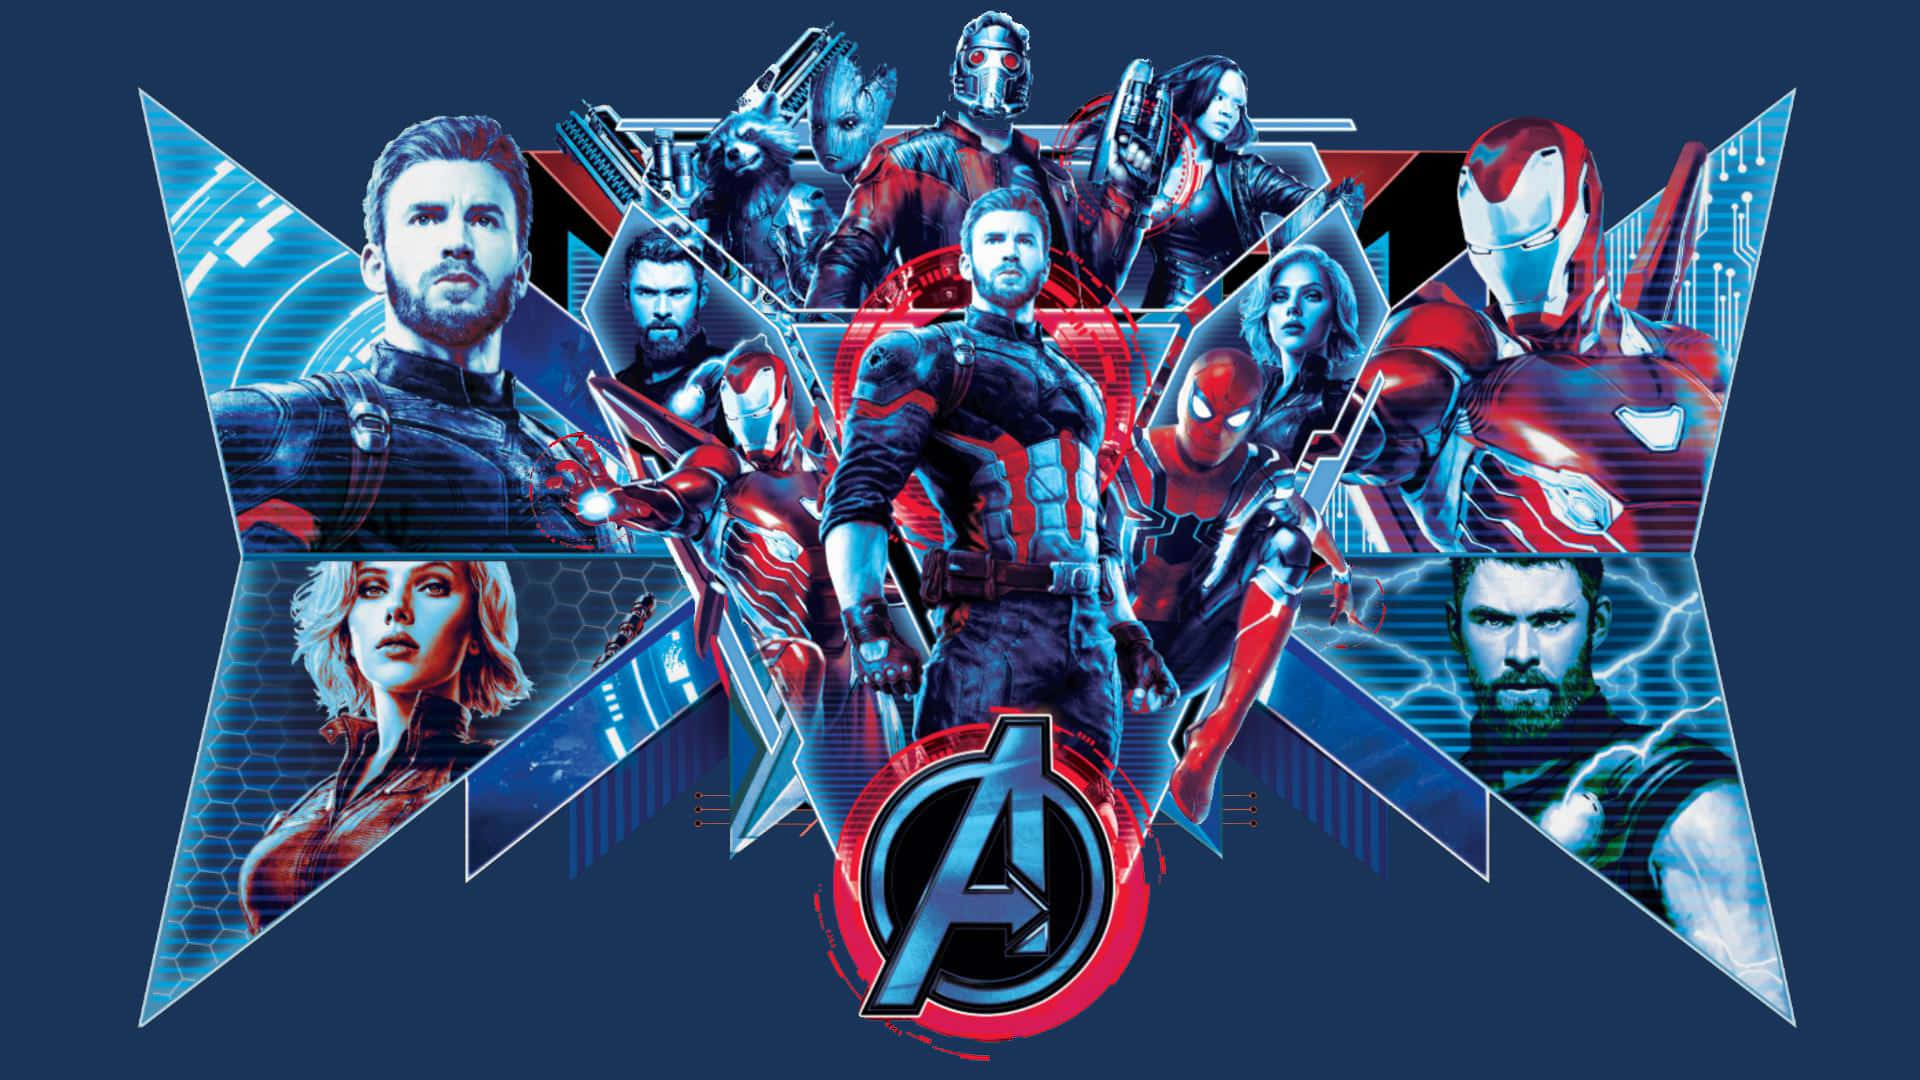 Avengers baggrund med et sødt superhelte tema.